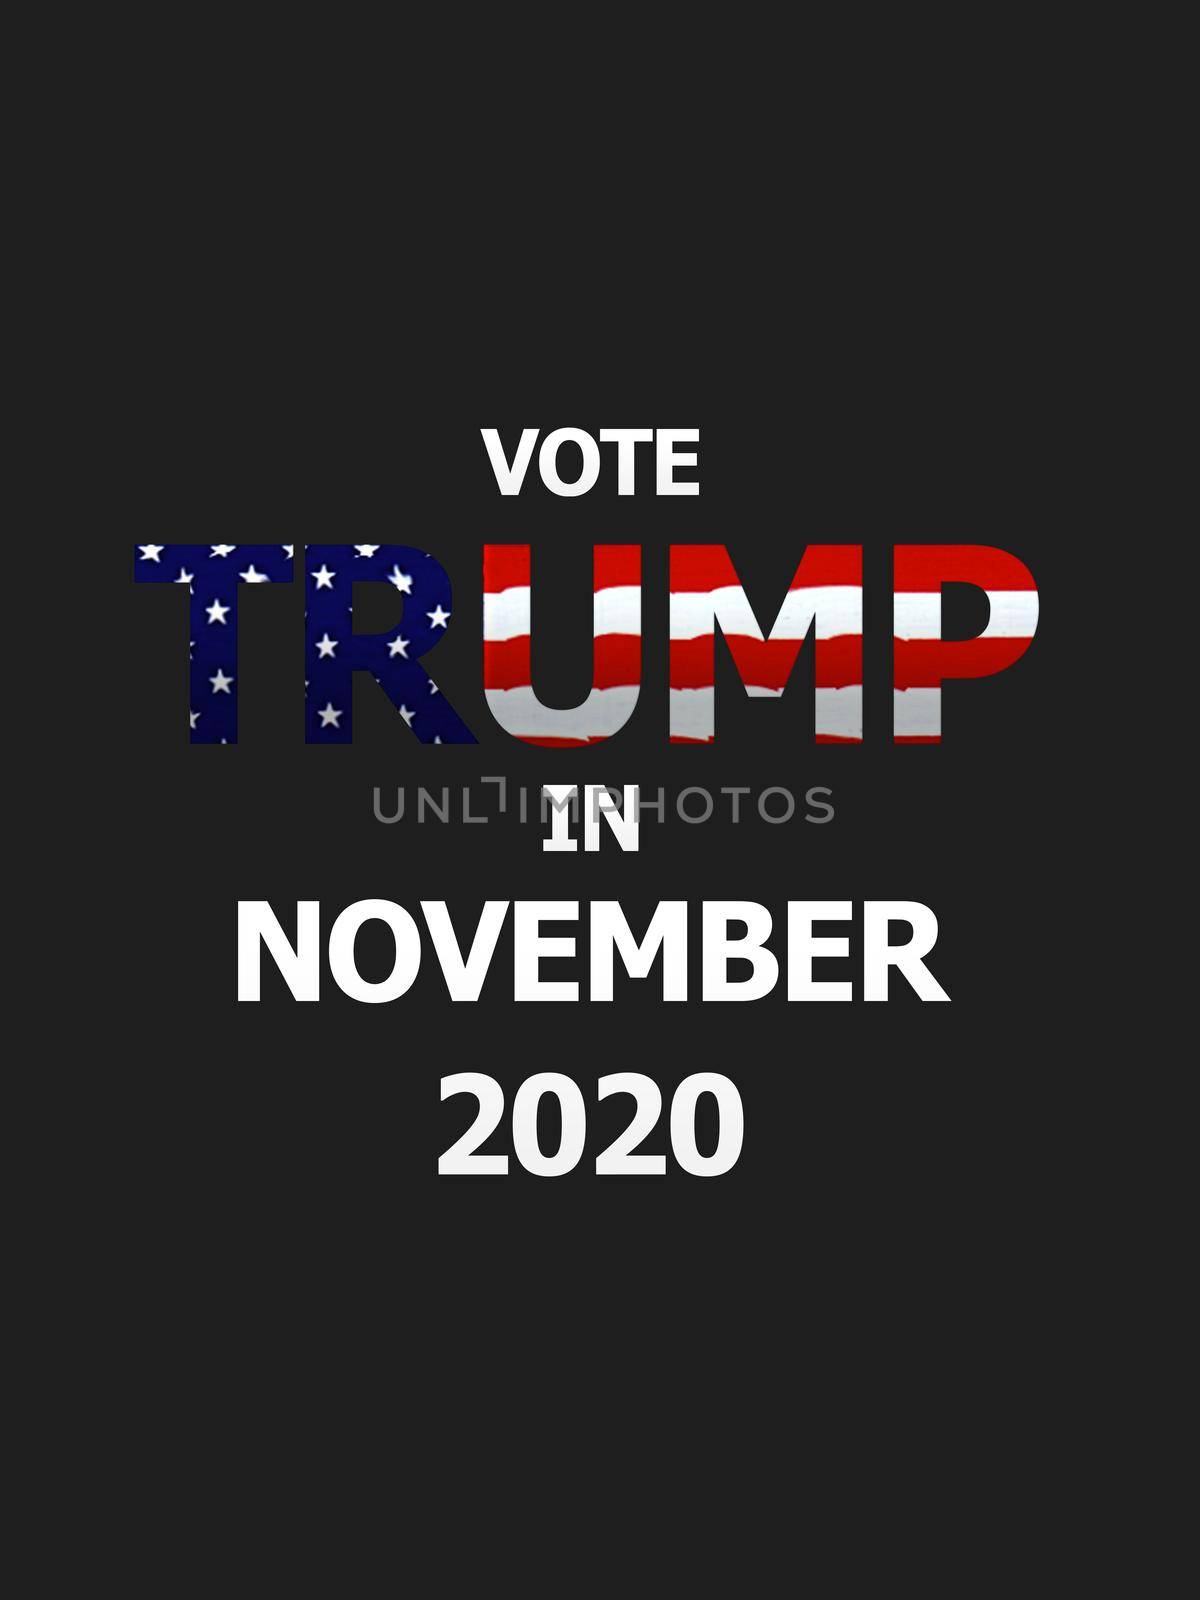 Vote Trump in 2020 by Bigalbaloo